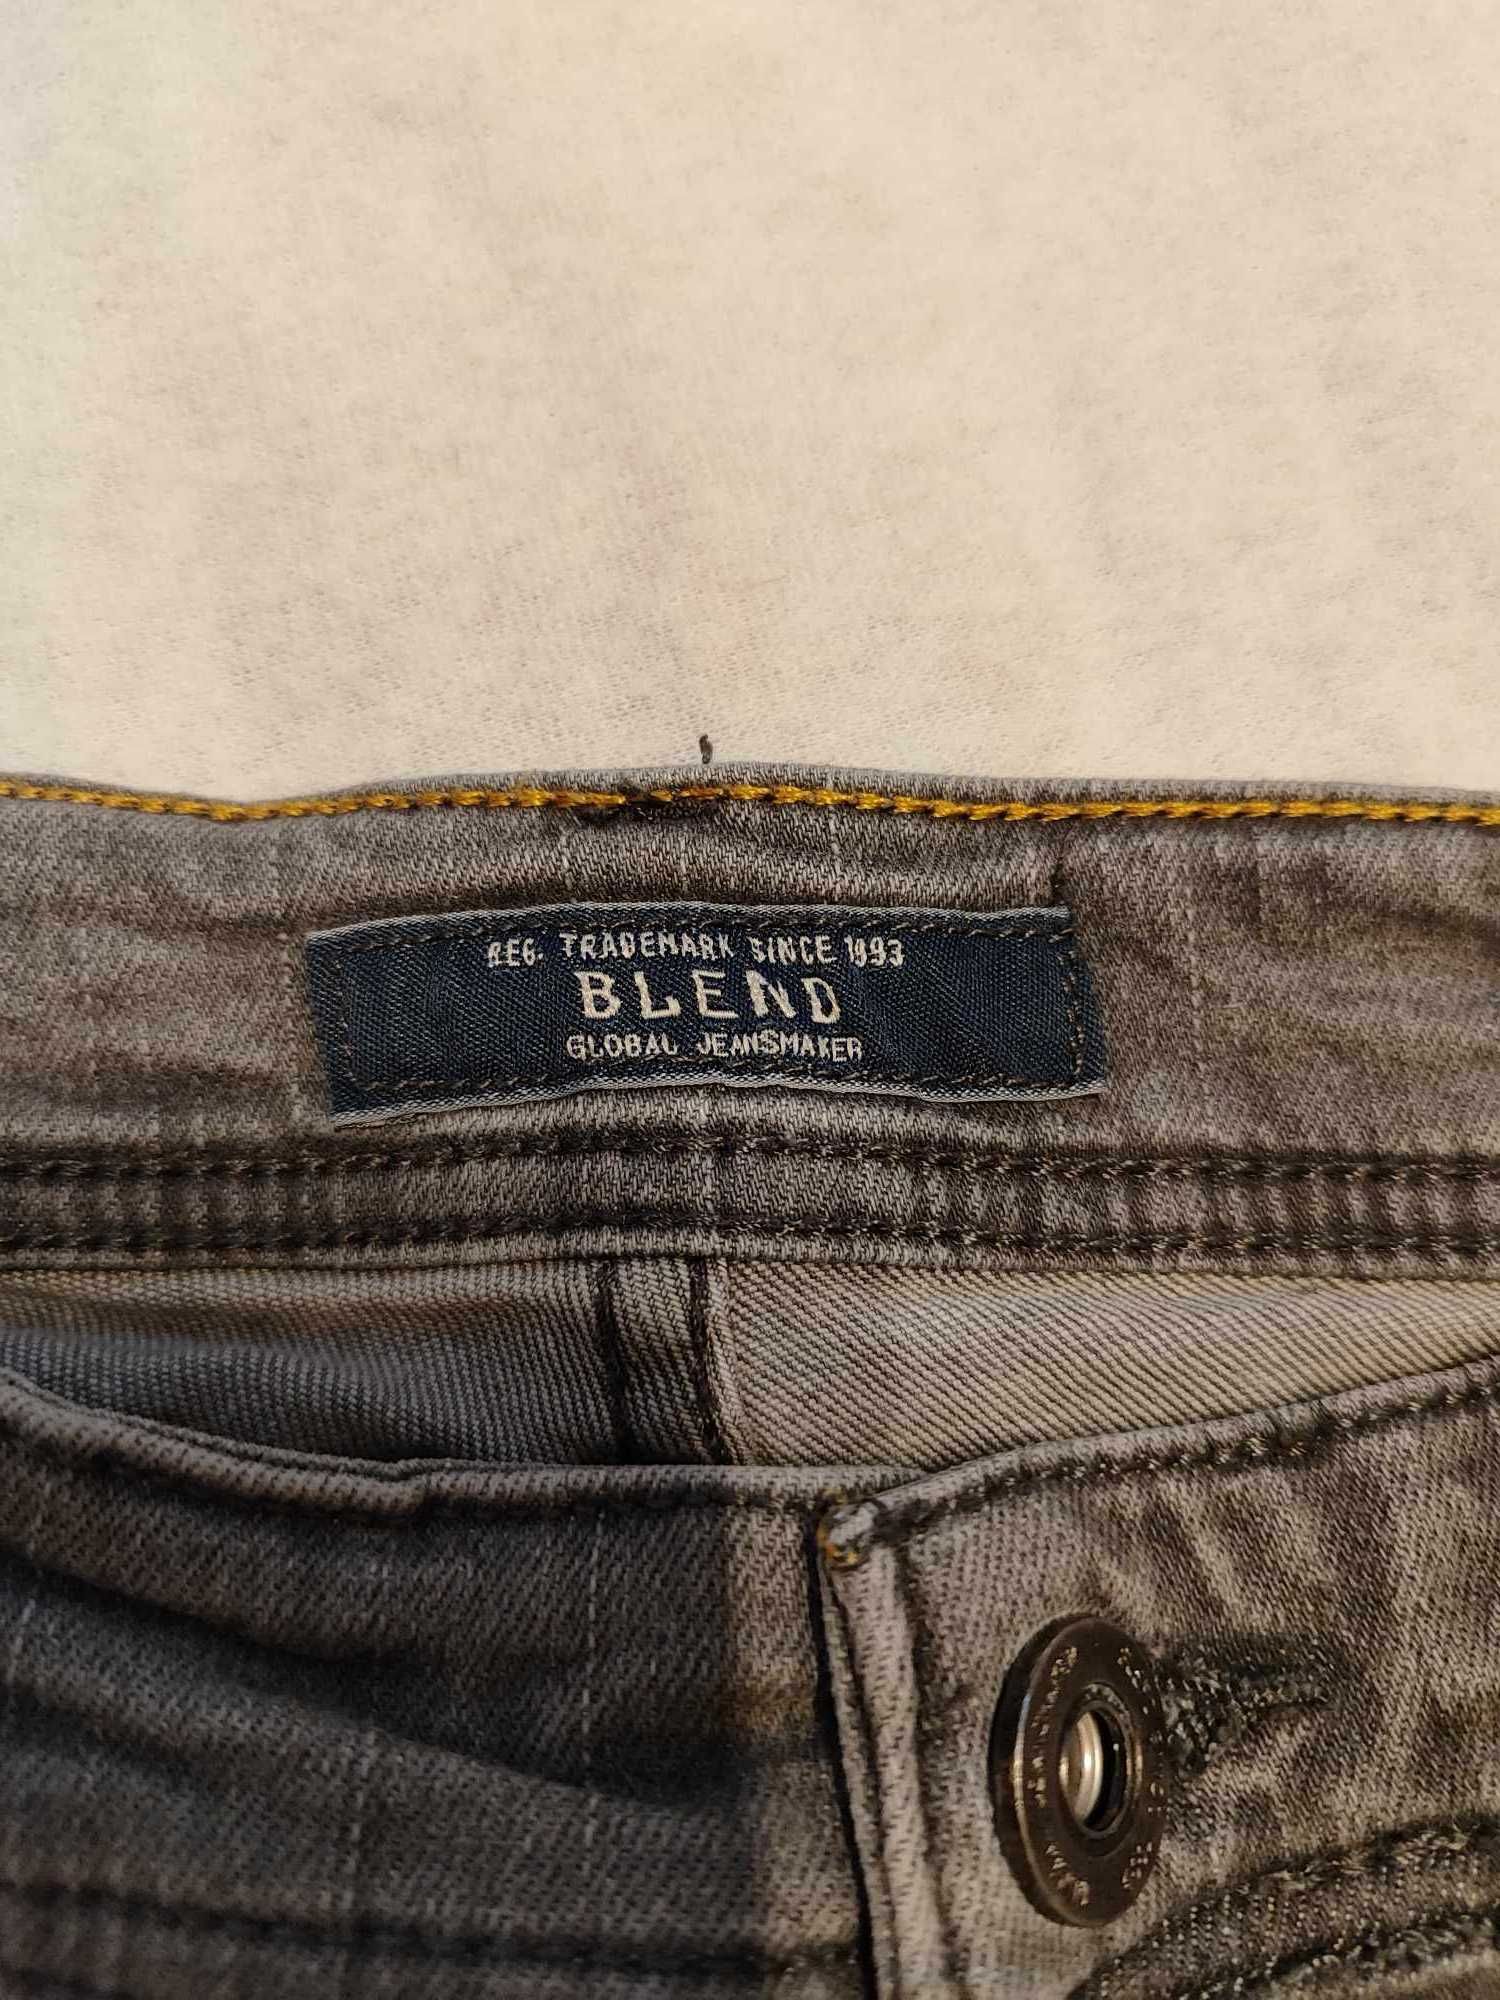 Szare męskie spodnie jeansowe, rozmiar 30/32